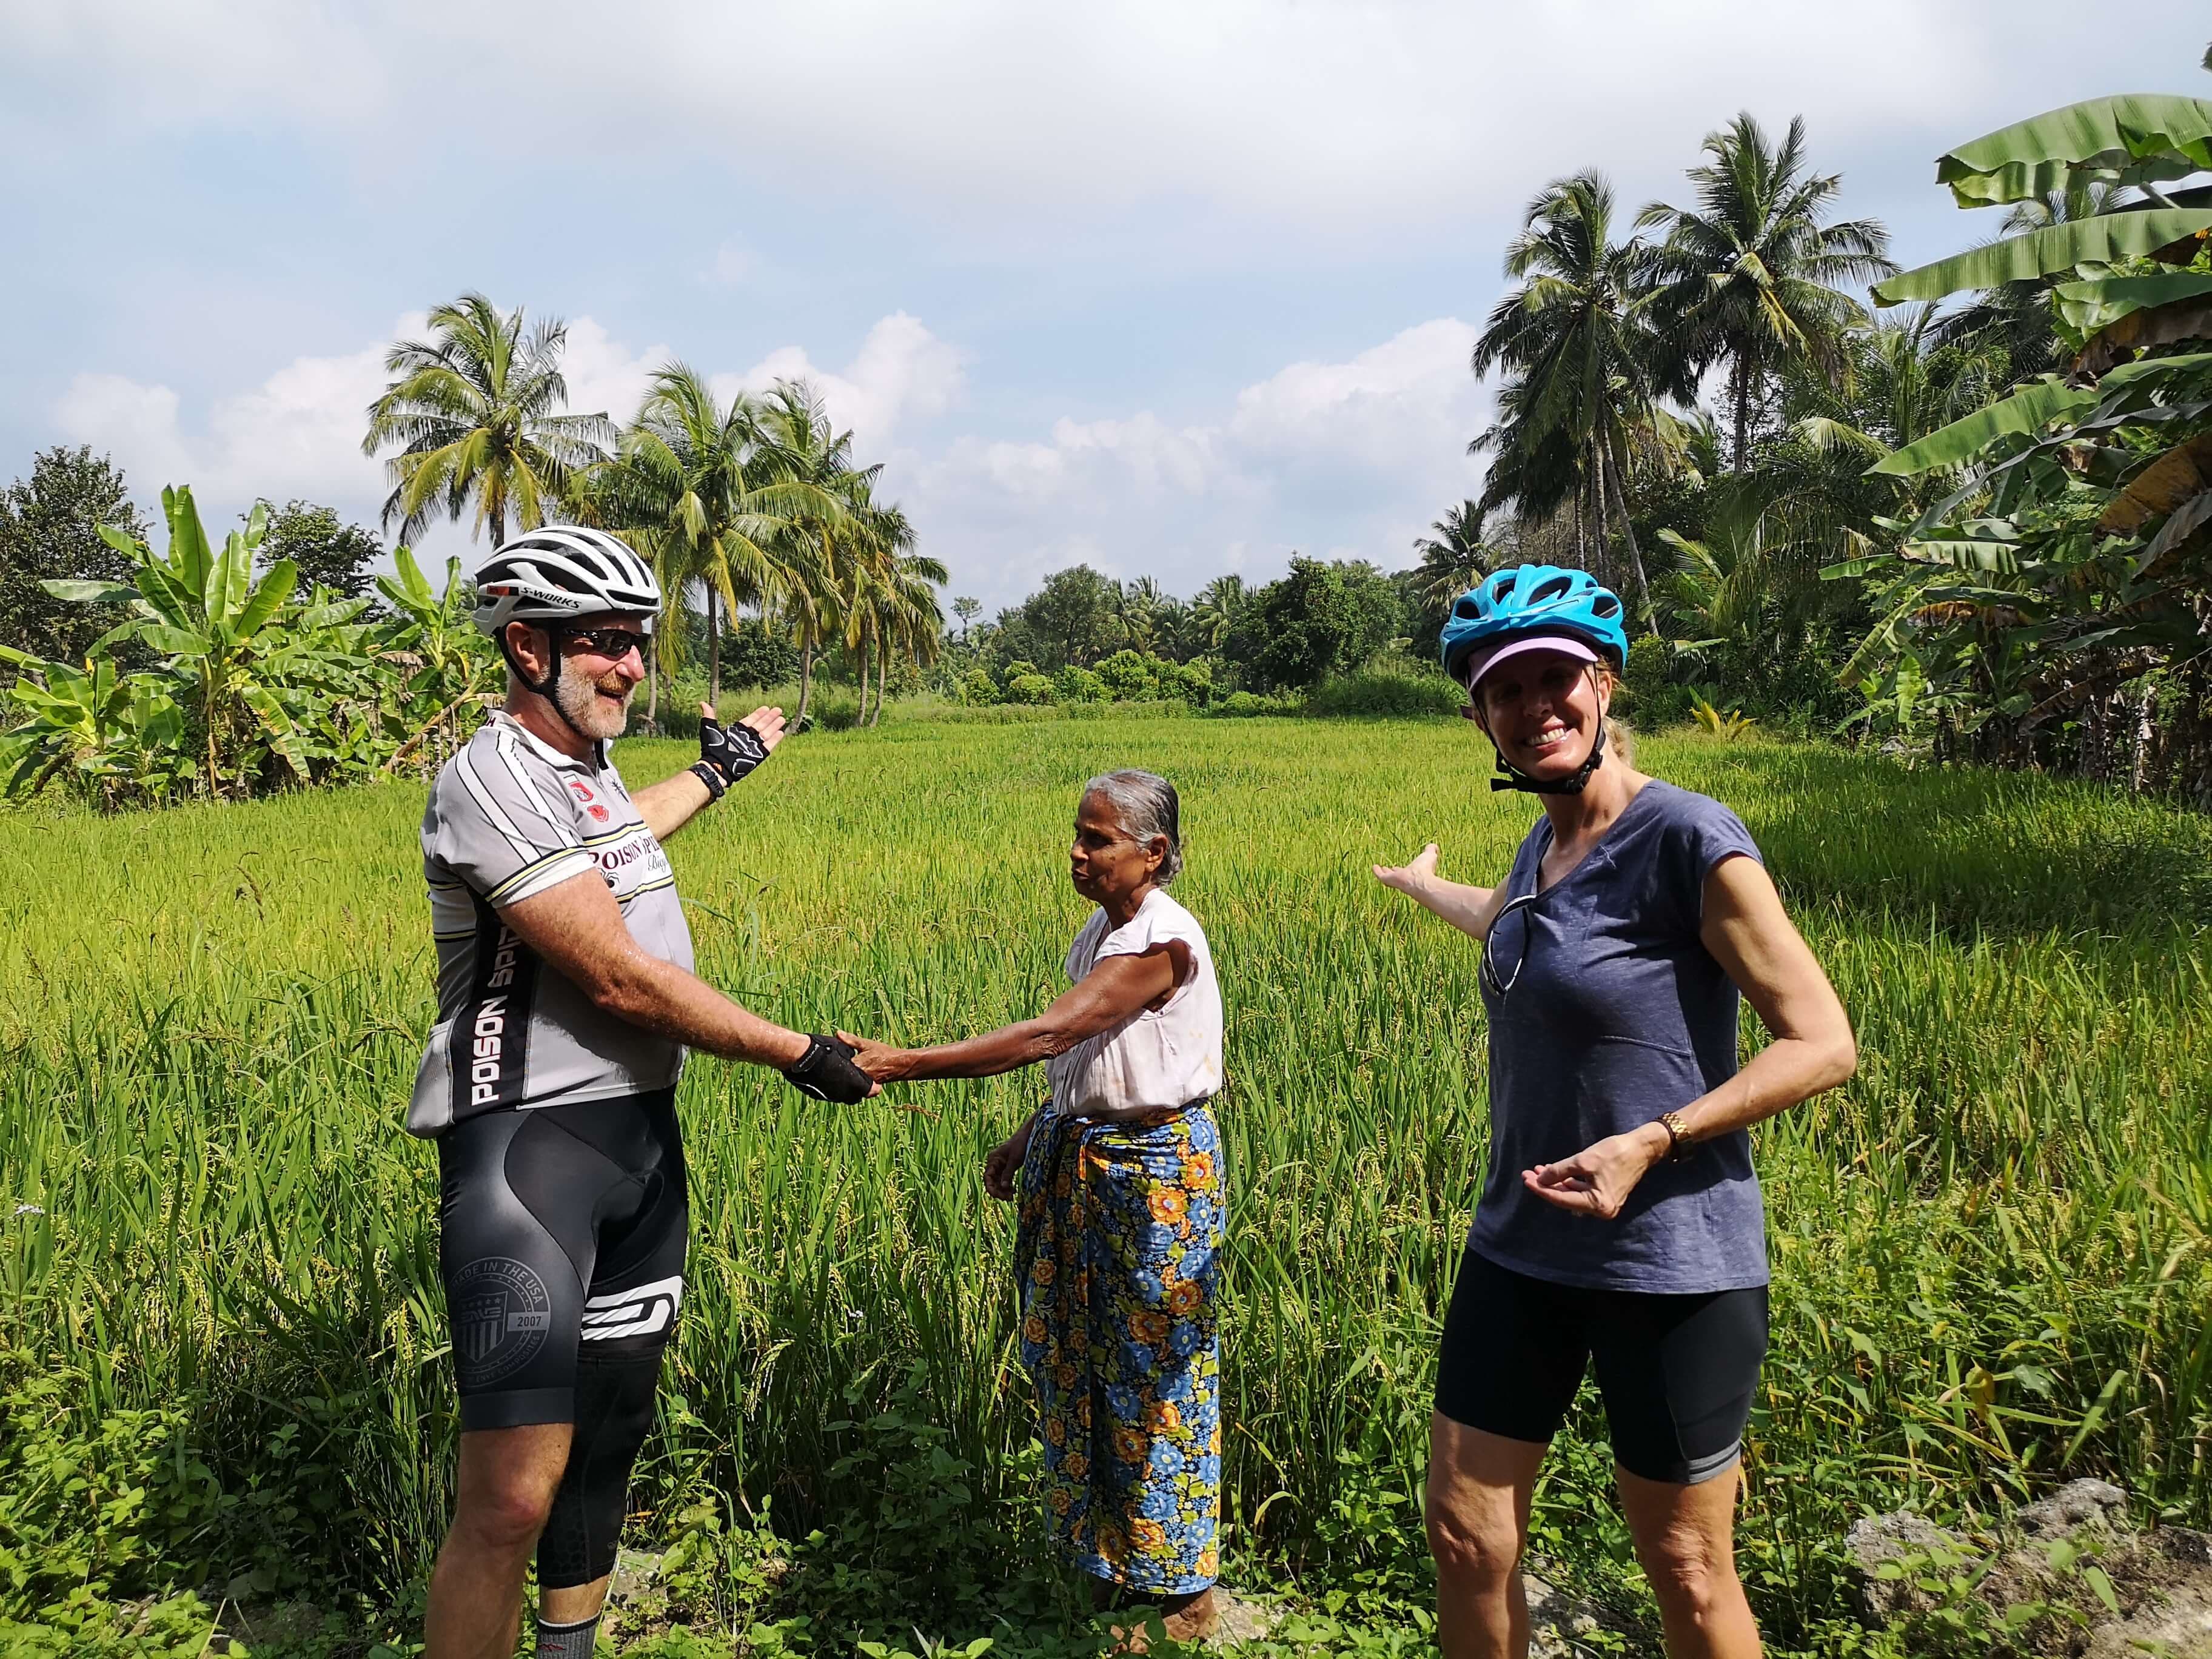 يلتقي السائحون بالسكان المحليين في منطقة مزارع الأرز في سيجيريا بسريلانكا